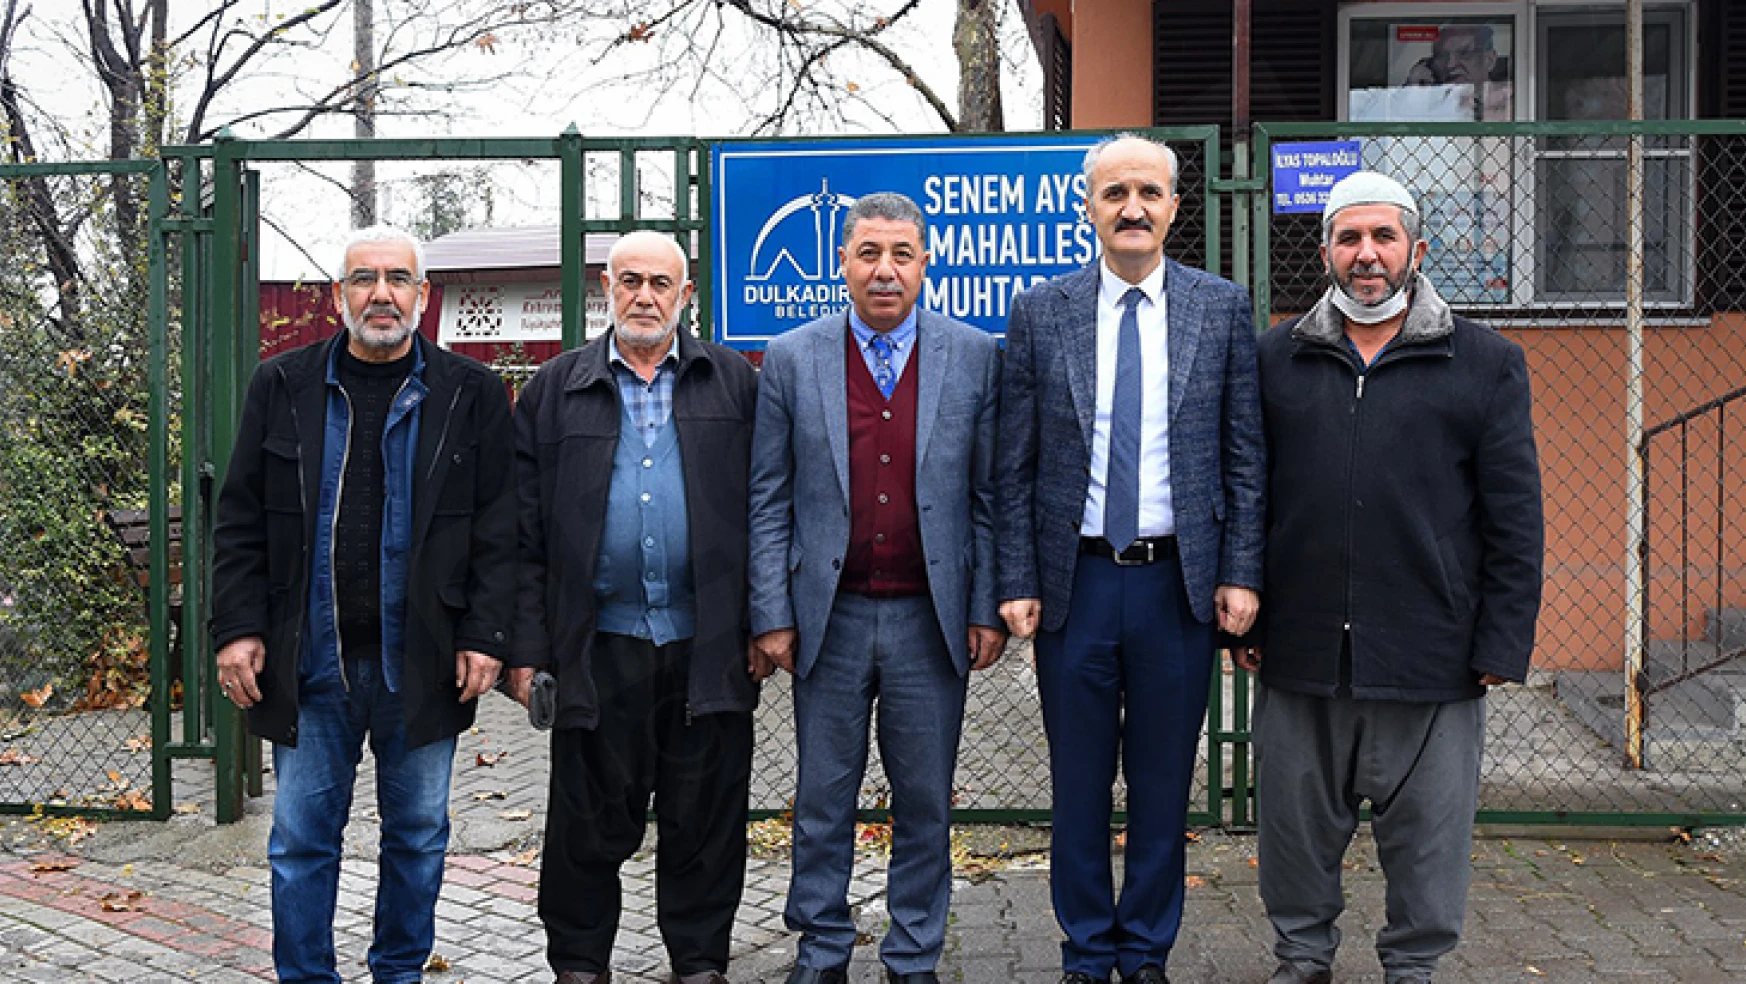 Başkan Okay Sütçü İmam, Gazipaşa ve Senem Ayşe mahallelerini ziyaret etti